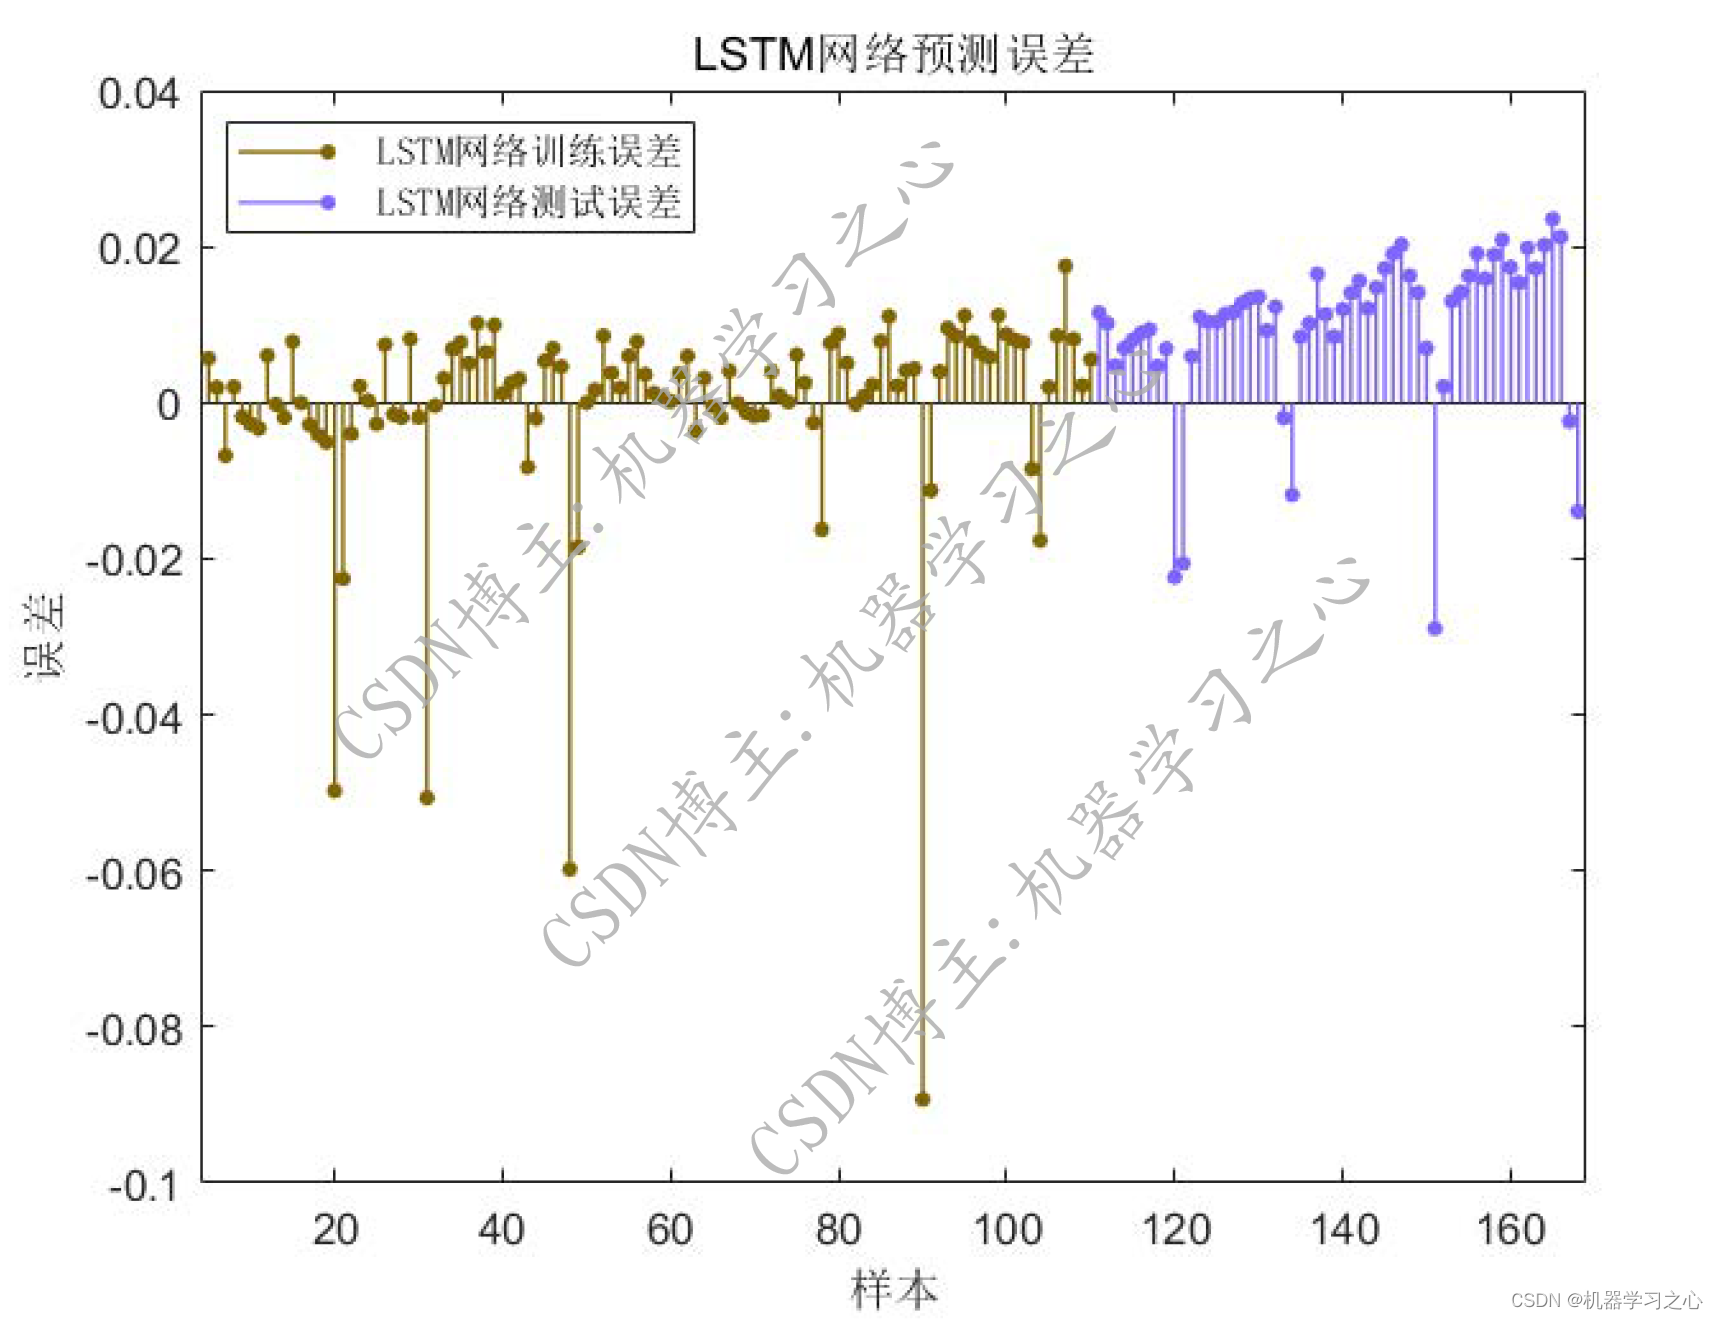 锂电池寿命预测 | Matlab基于LSTM长短期记忆神经网络的锂电池寿命预测